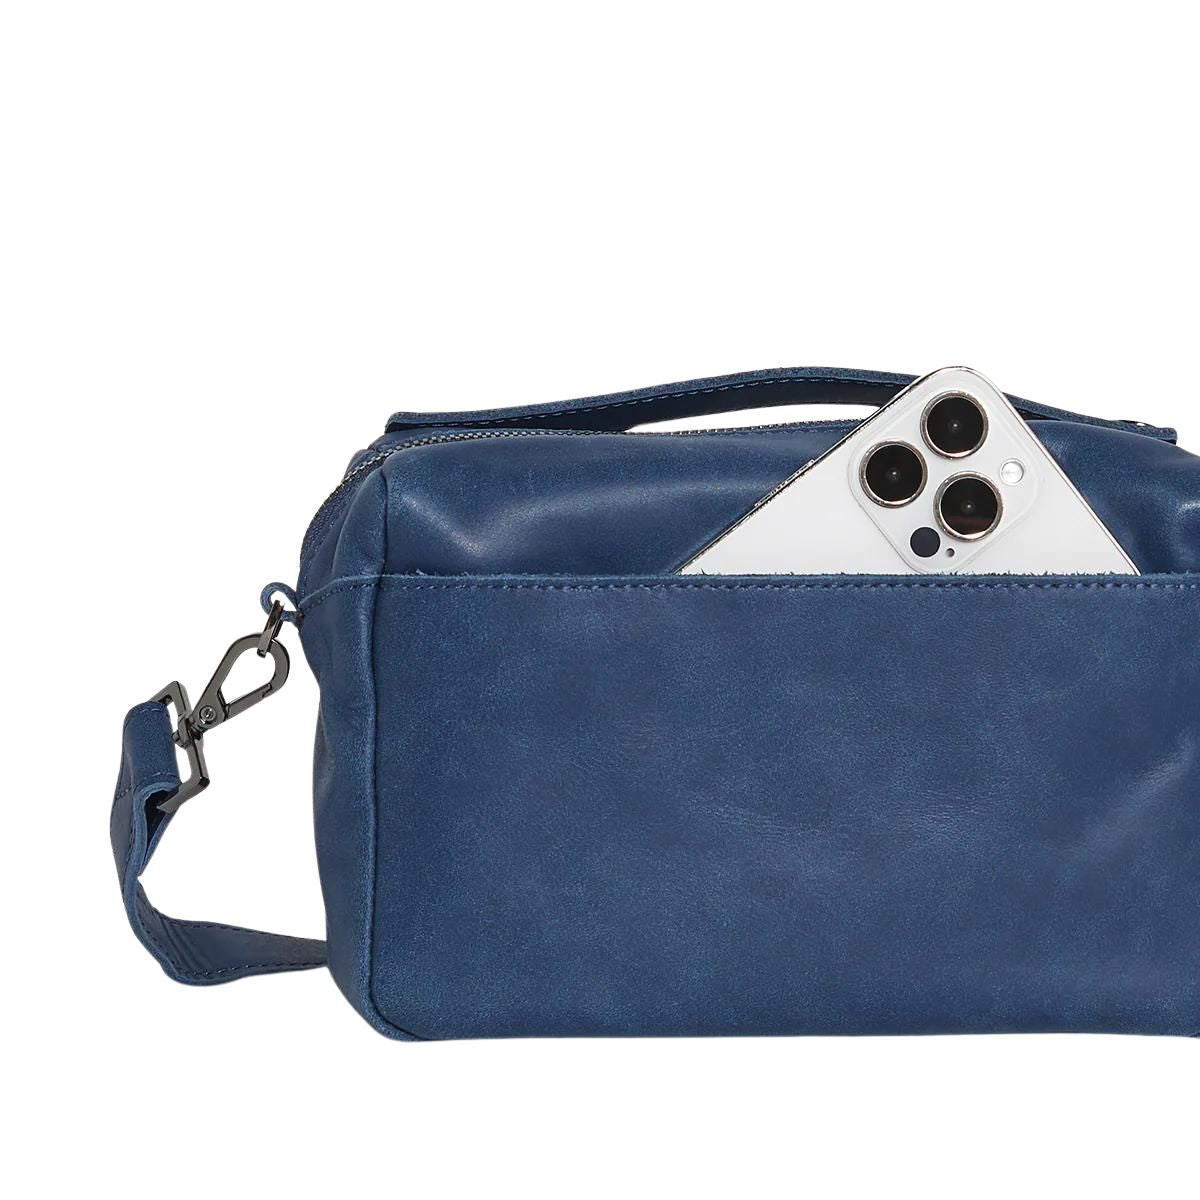 Michael Kors Navy Blue Crossbody Handbag | Cross body handbags, Blue crossbody  purse, Blue crossbody